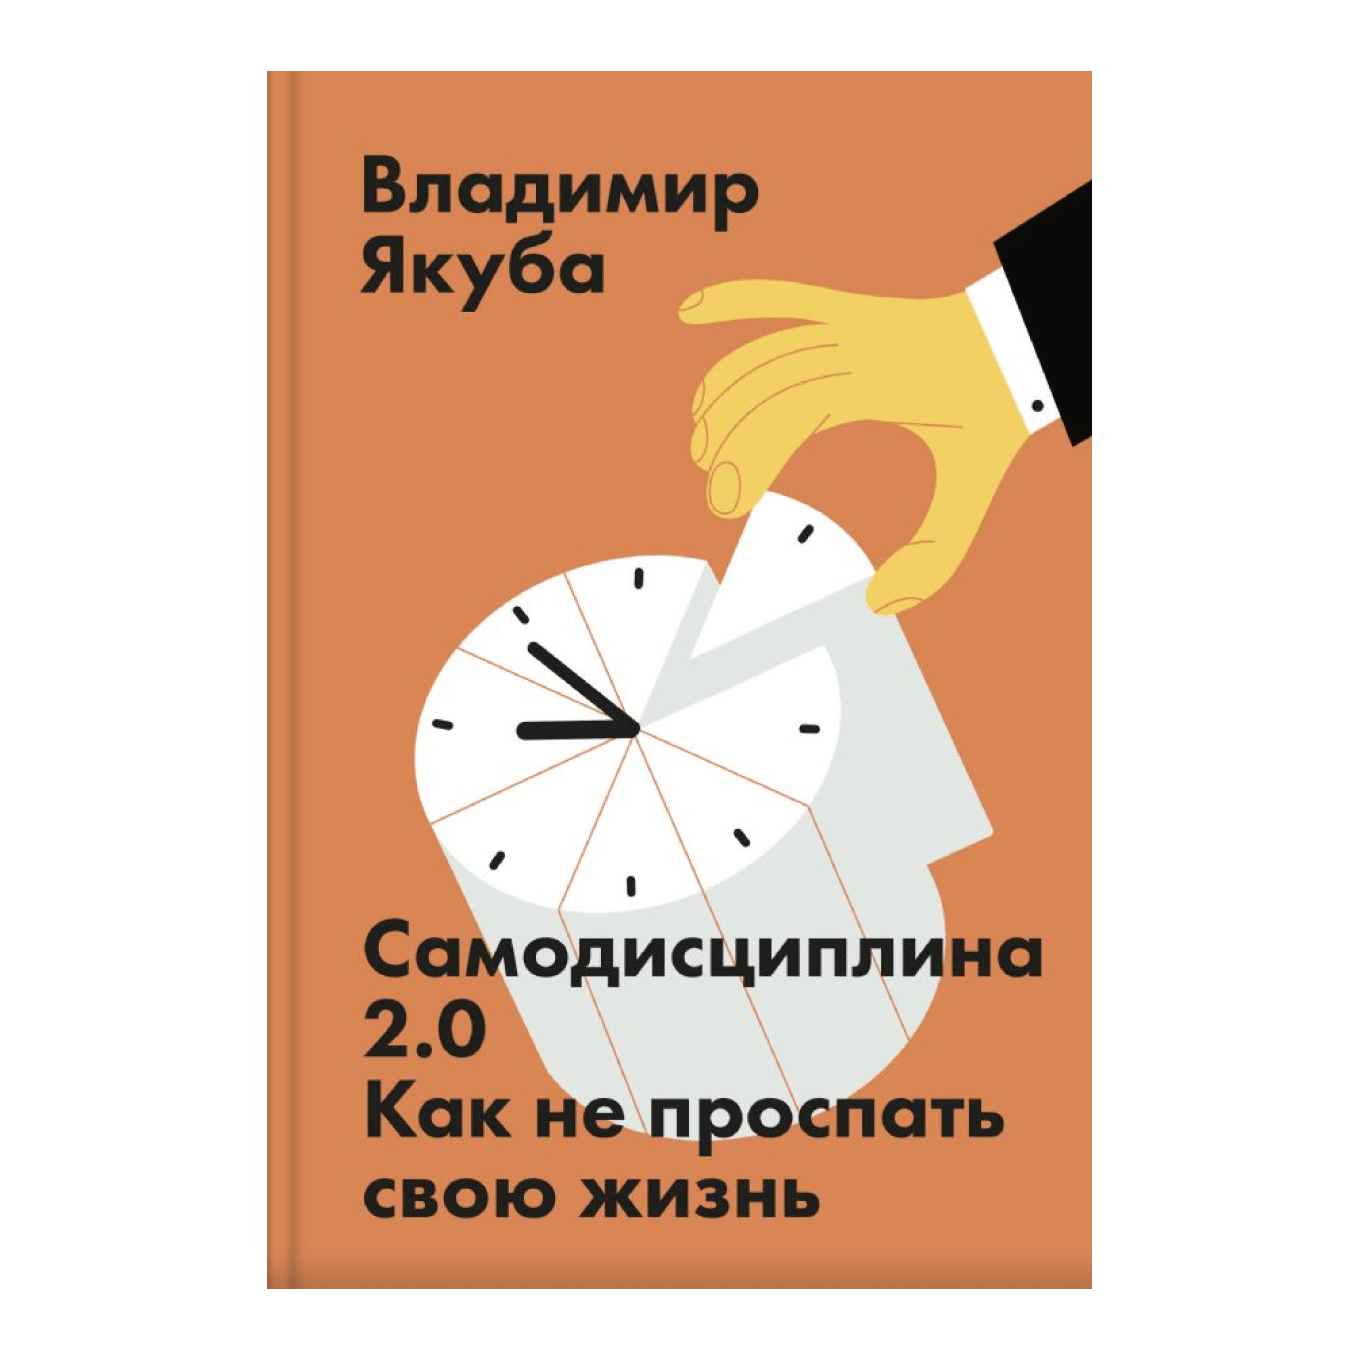 Книга Владимира Якуба «Самодисциплина 2.0. Как не проспать свою жизнь»